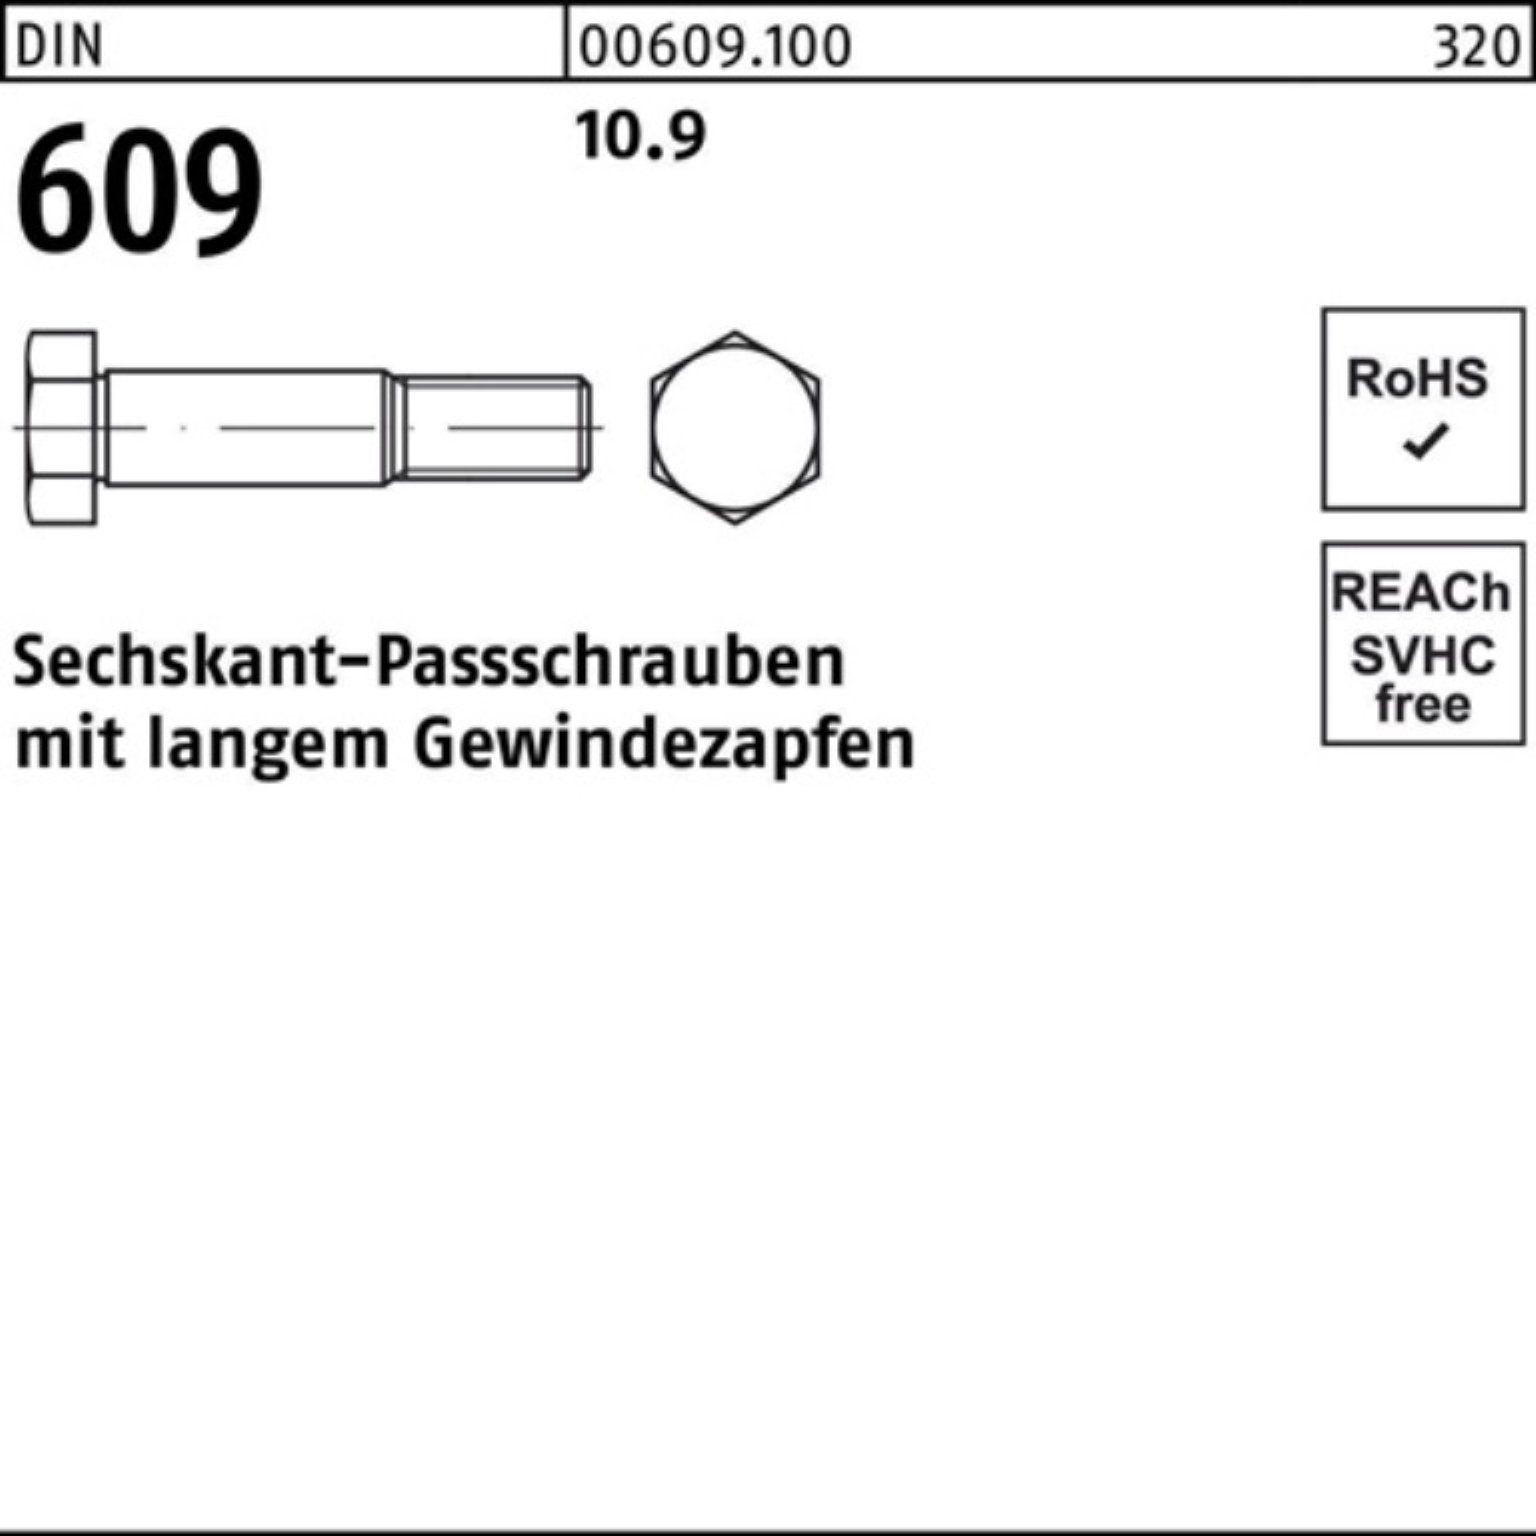 Reyher Schraube 100er 80 609 Sechskantpassschraube Pack M16x DIN langem Gewindezapfen